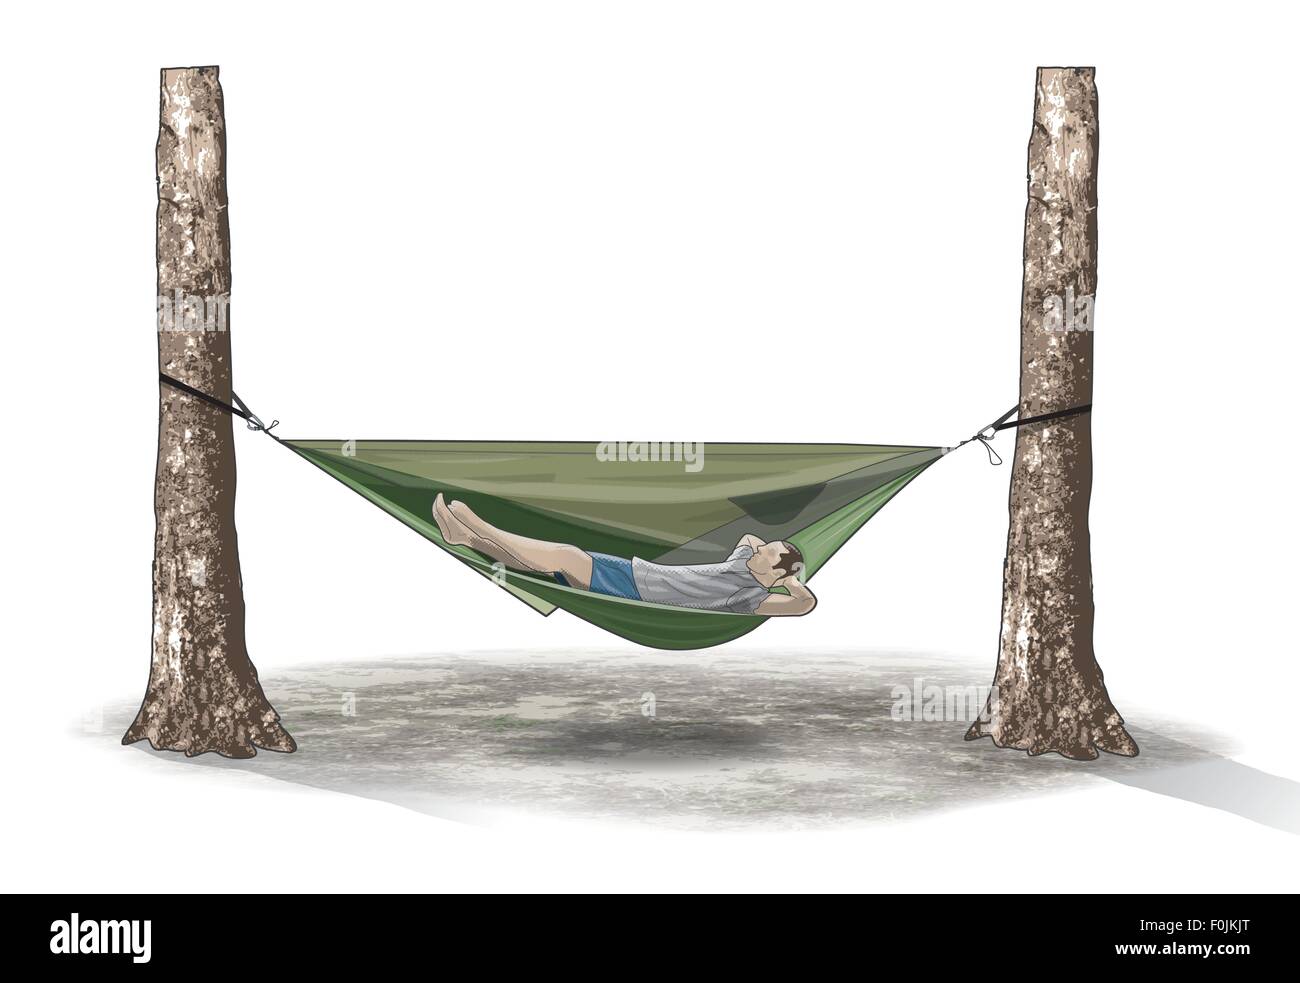 Illustration numérique de l'homme allongé sur un hamac suspendu entre deux troncs d'arbre Banque D'Images